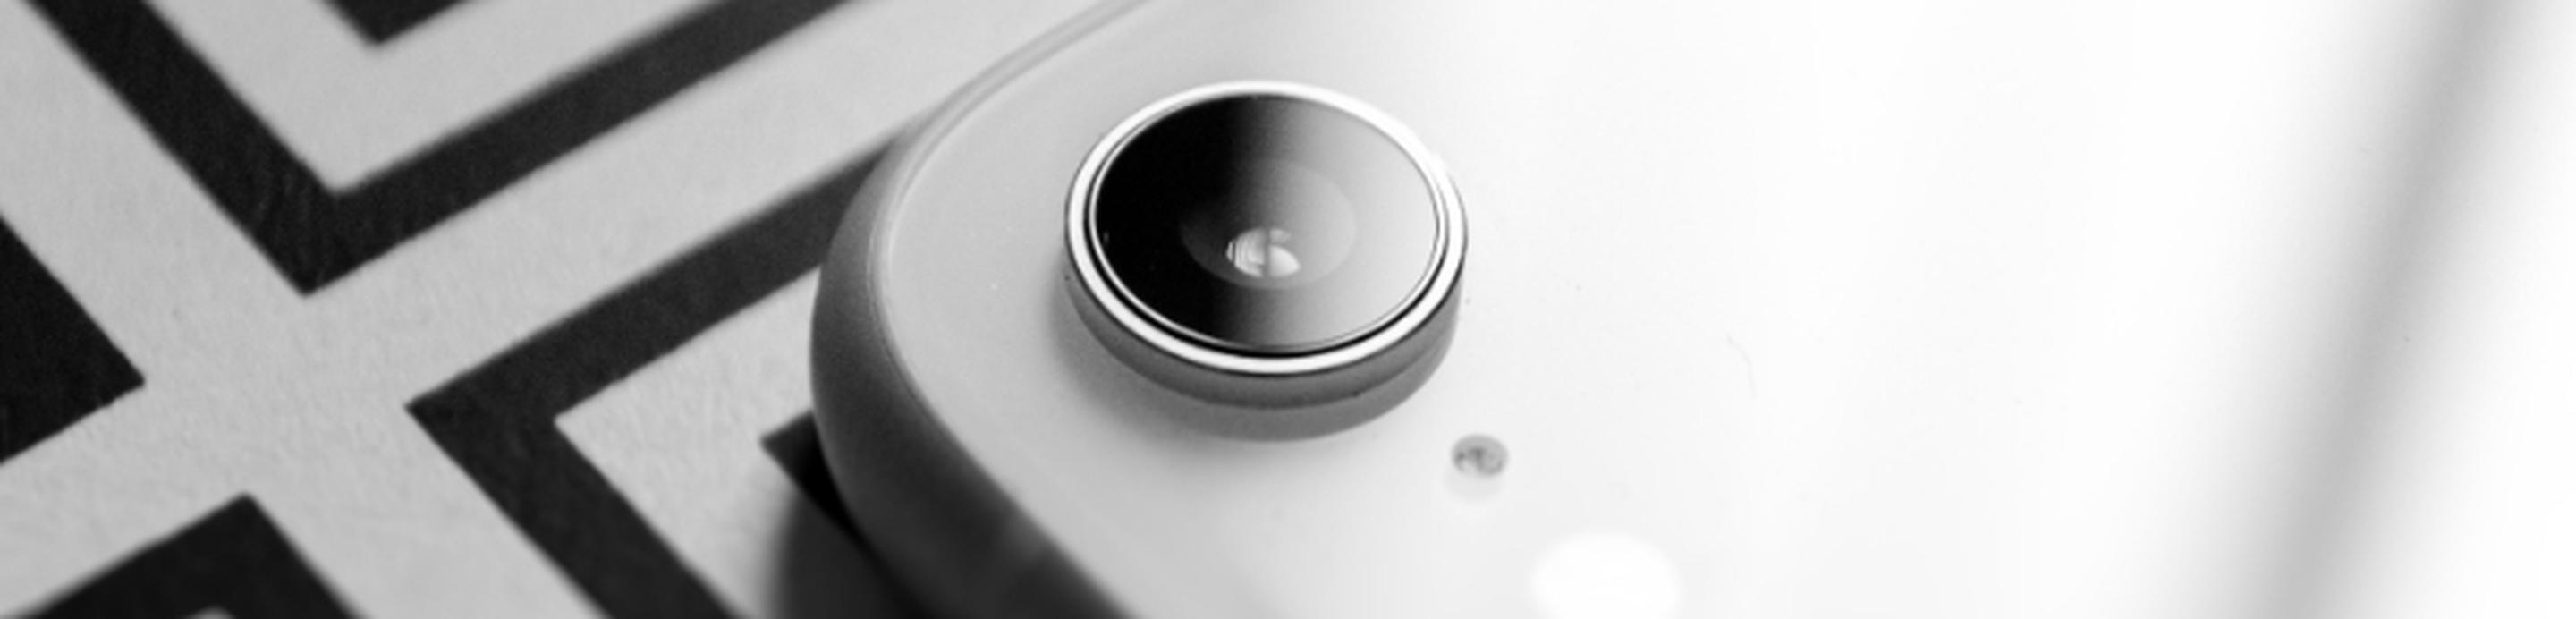 iPhone XR weiß, mit schwarz-weißem Hintergrund